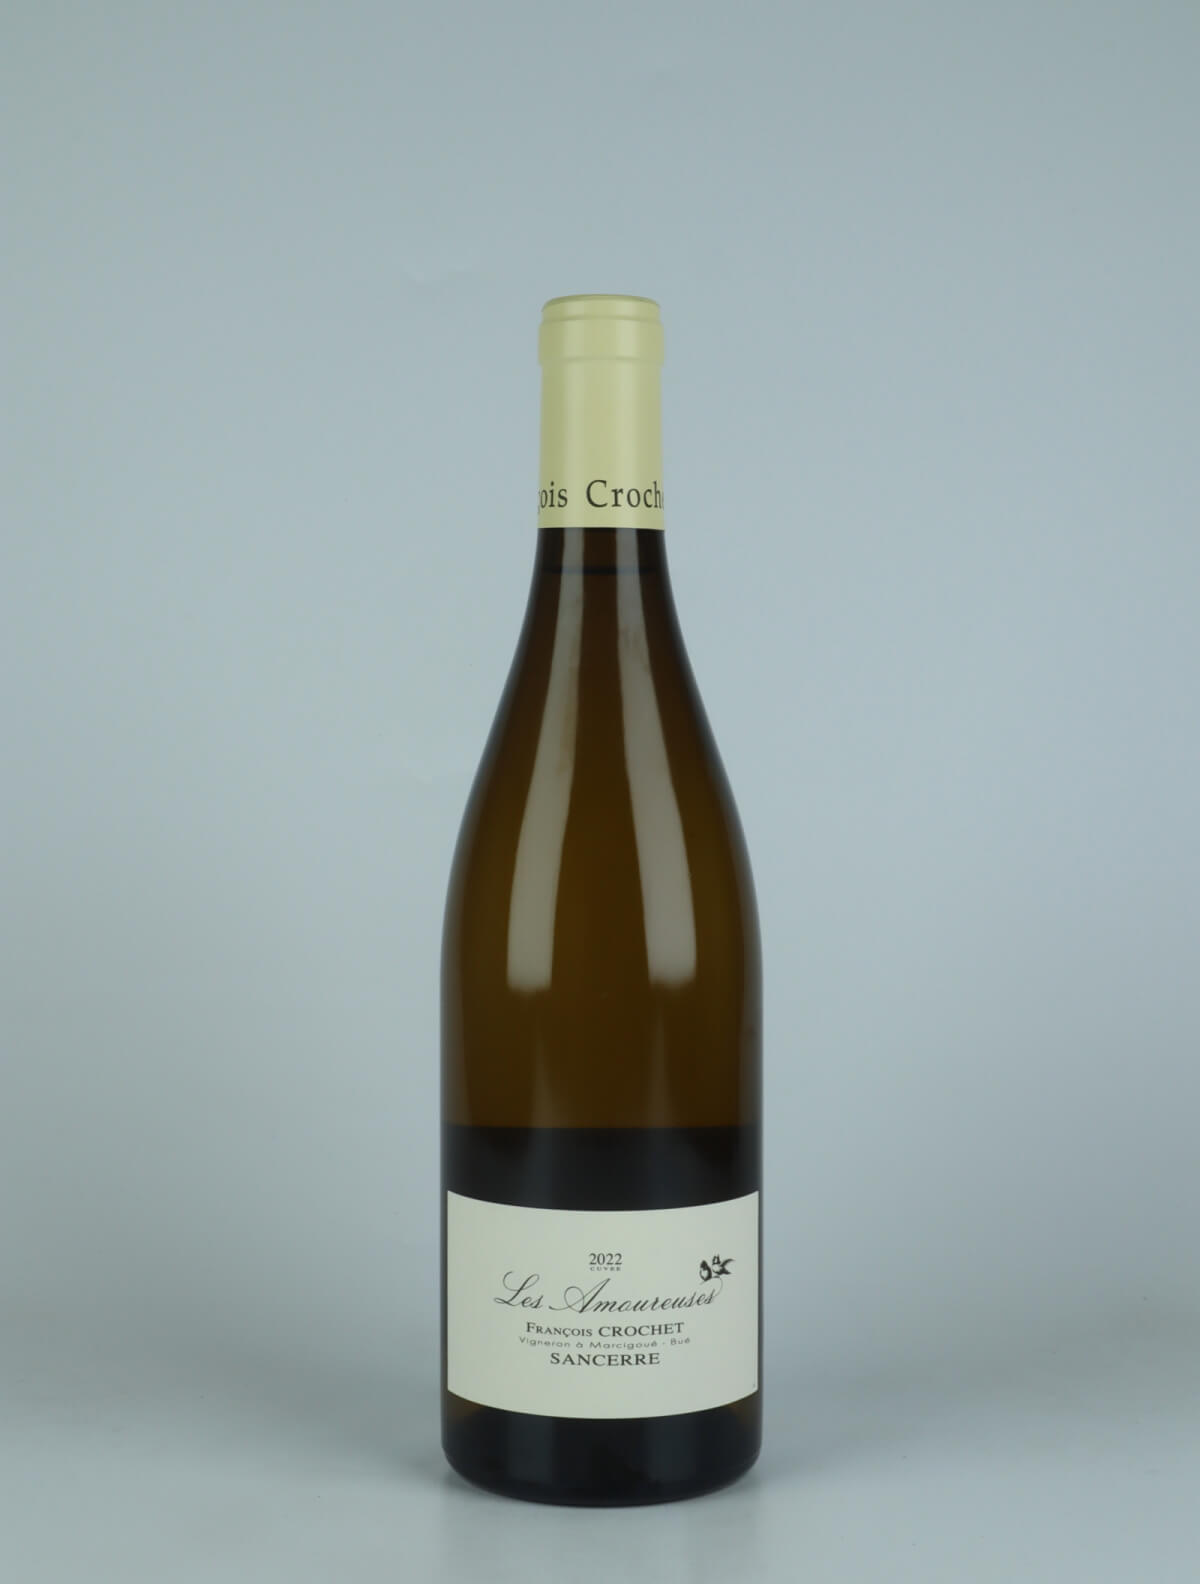 A bottle 2022 Sancerre Blanc - Les Amoureuses White wine from François Crochet, Loire in France